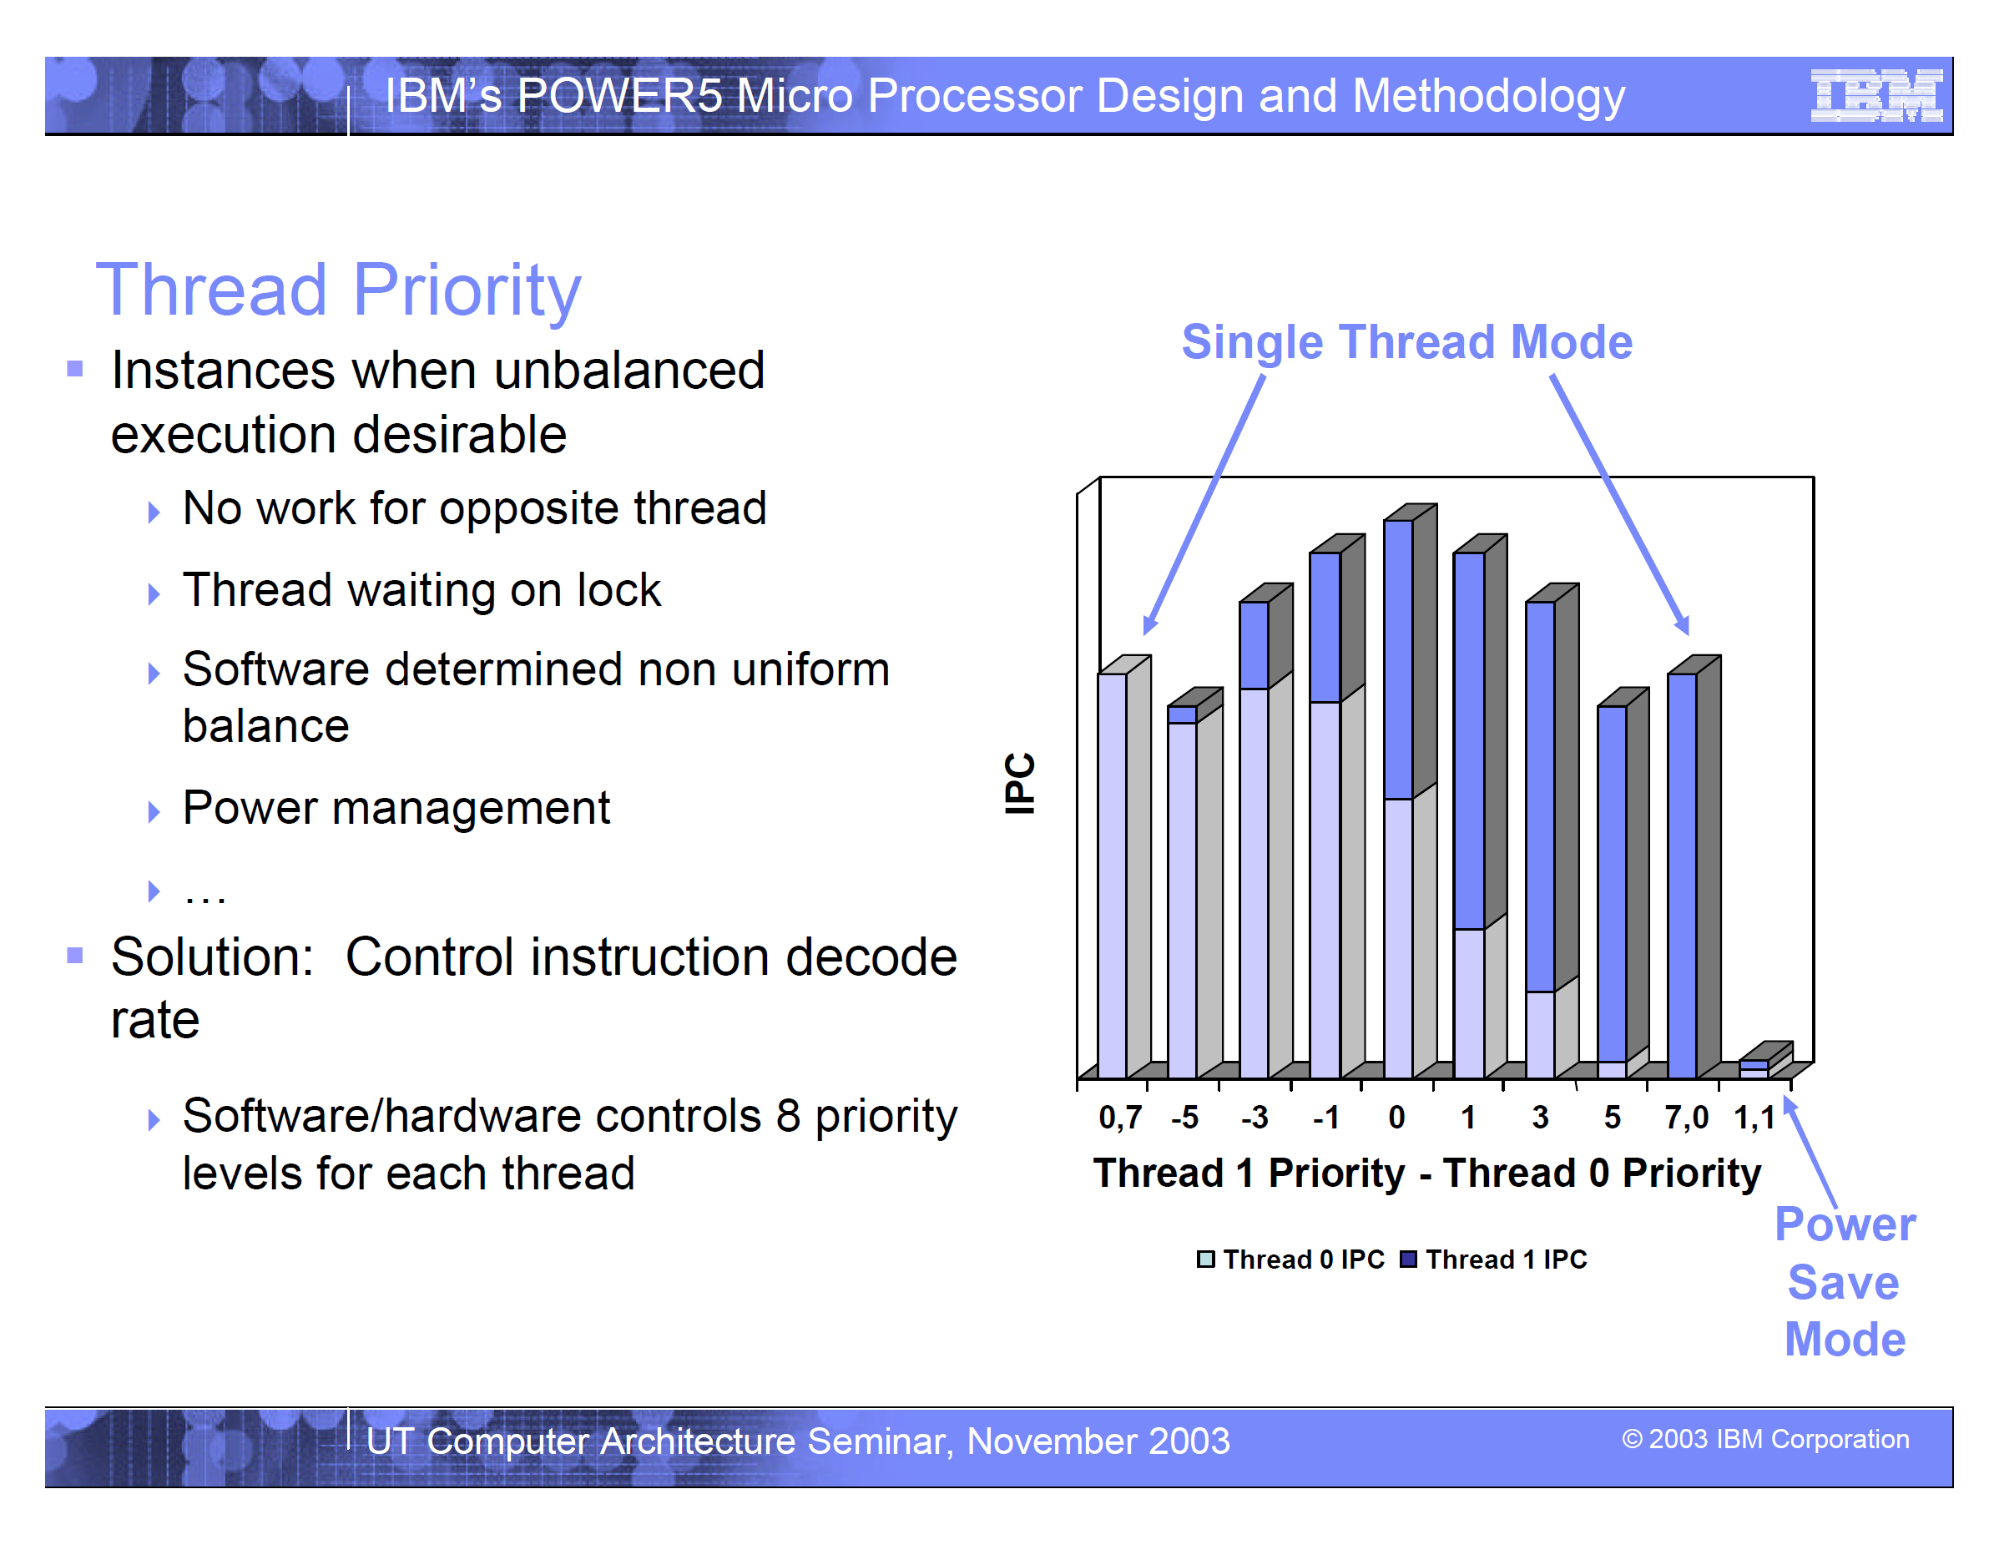 照片中提到了IBM's POWER5 Micro Processor Design and Methodology、Thread Priority、Single Thread Mode，包含了角度、線、儀表、組織、產品